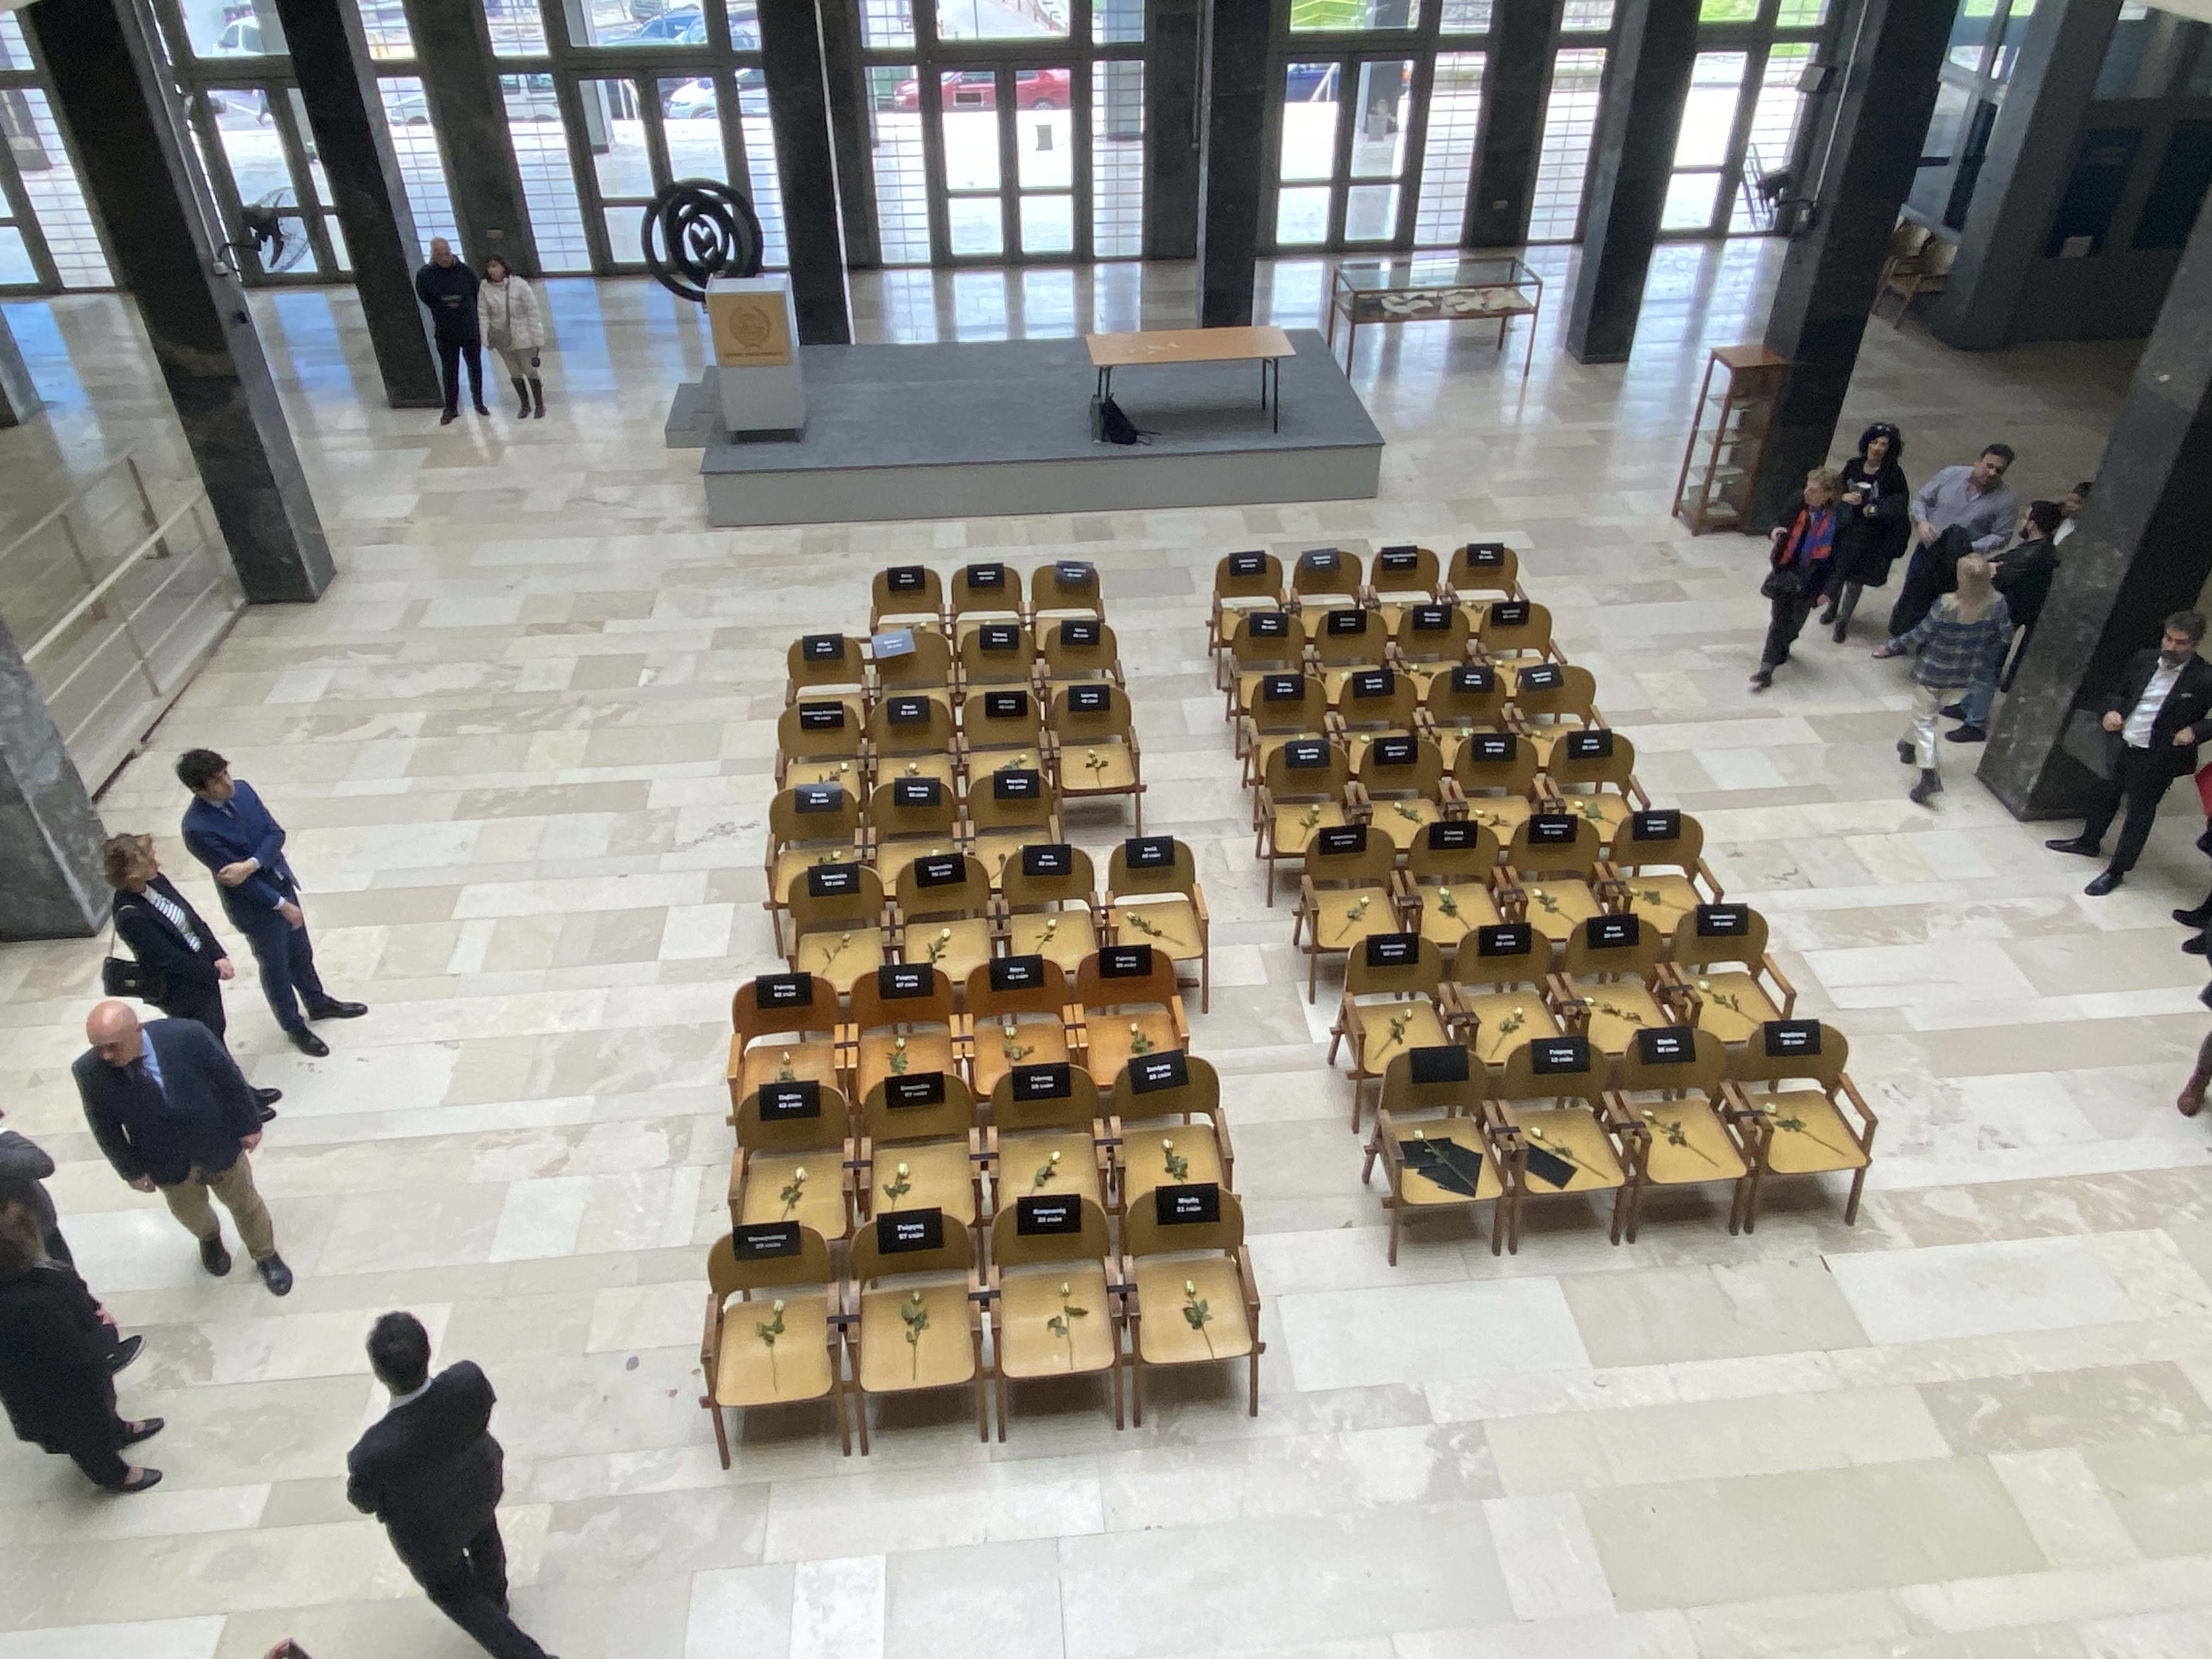 Τέμπη: Λευκά τριαντάφυλλα σε 57 άδειες καρέκλες - Σιωπηρή διαμαρτυρία στα Δικαστήρια Θεσσαλονίκης